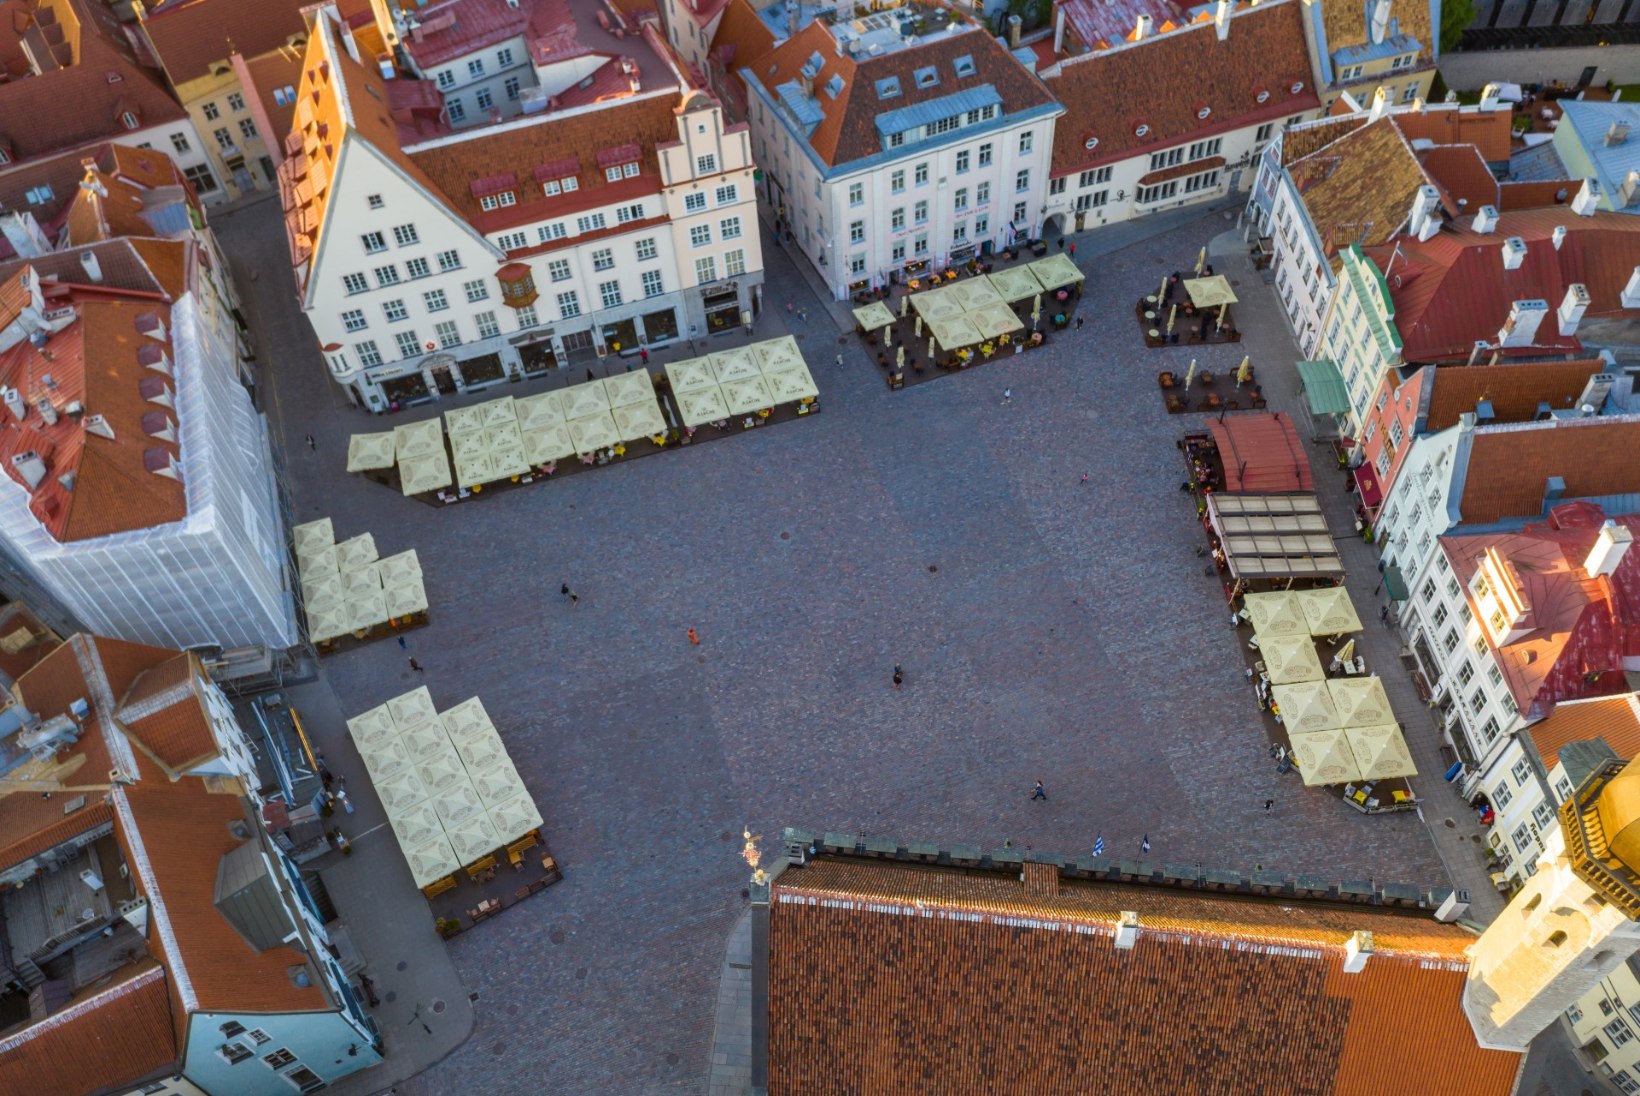 ÕLLE HIND REKORDMADAL: Tallinna Raekoja platsi söögikohtade hinnad kukkusid kivina